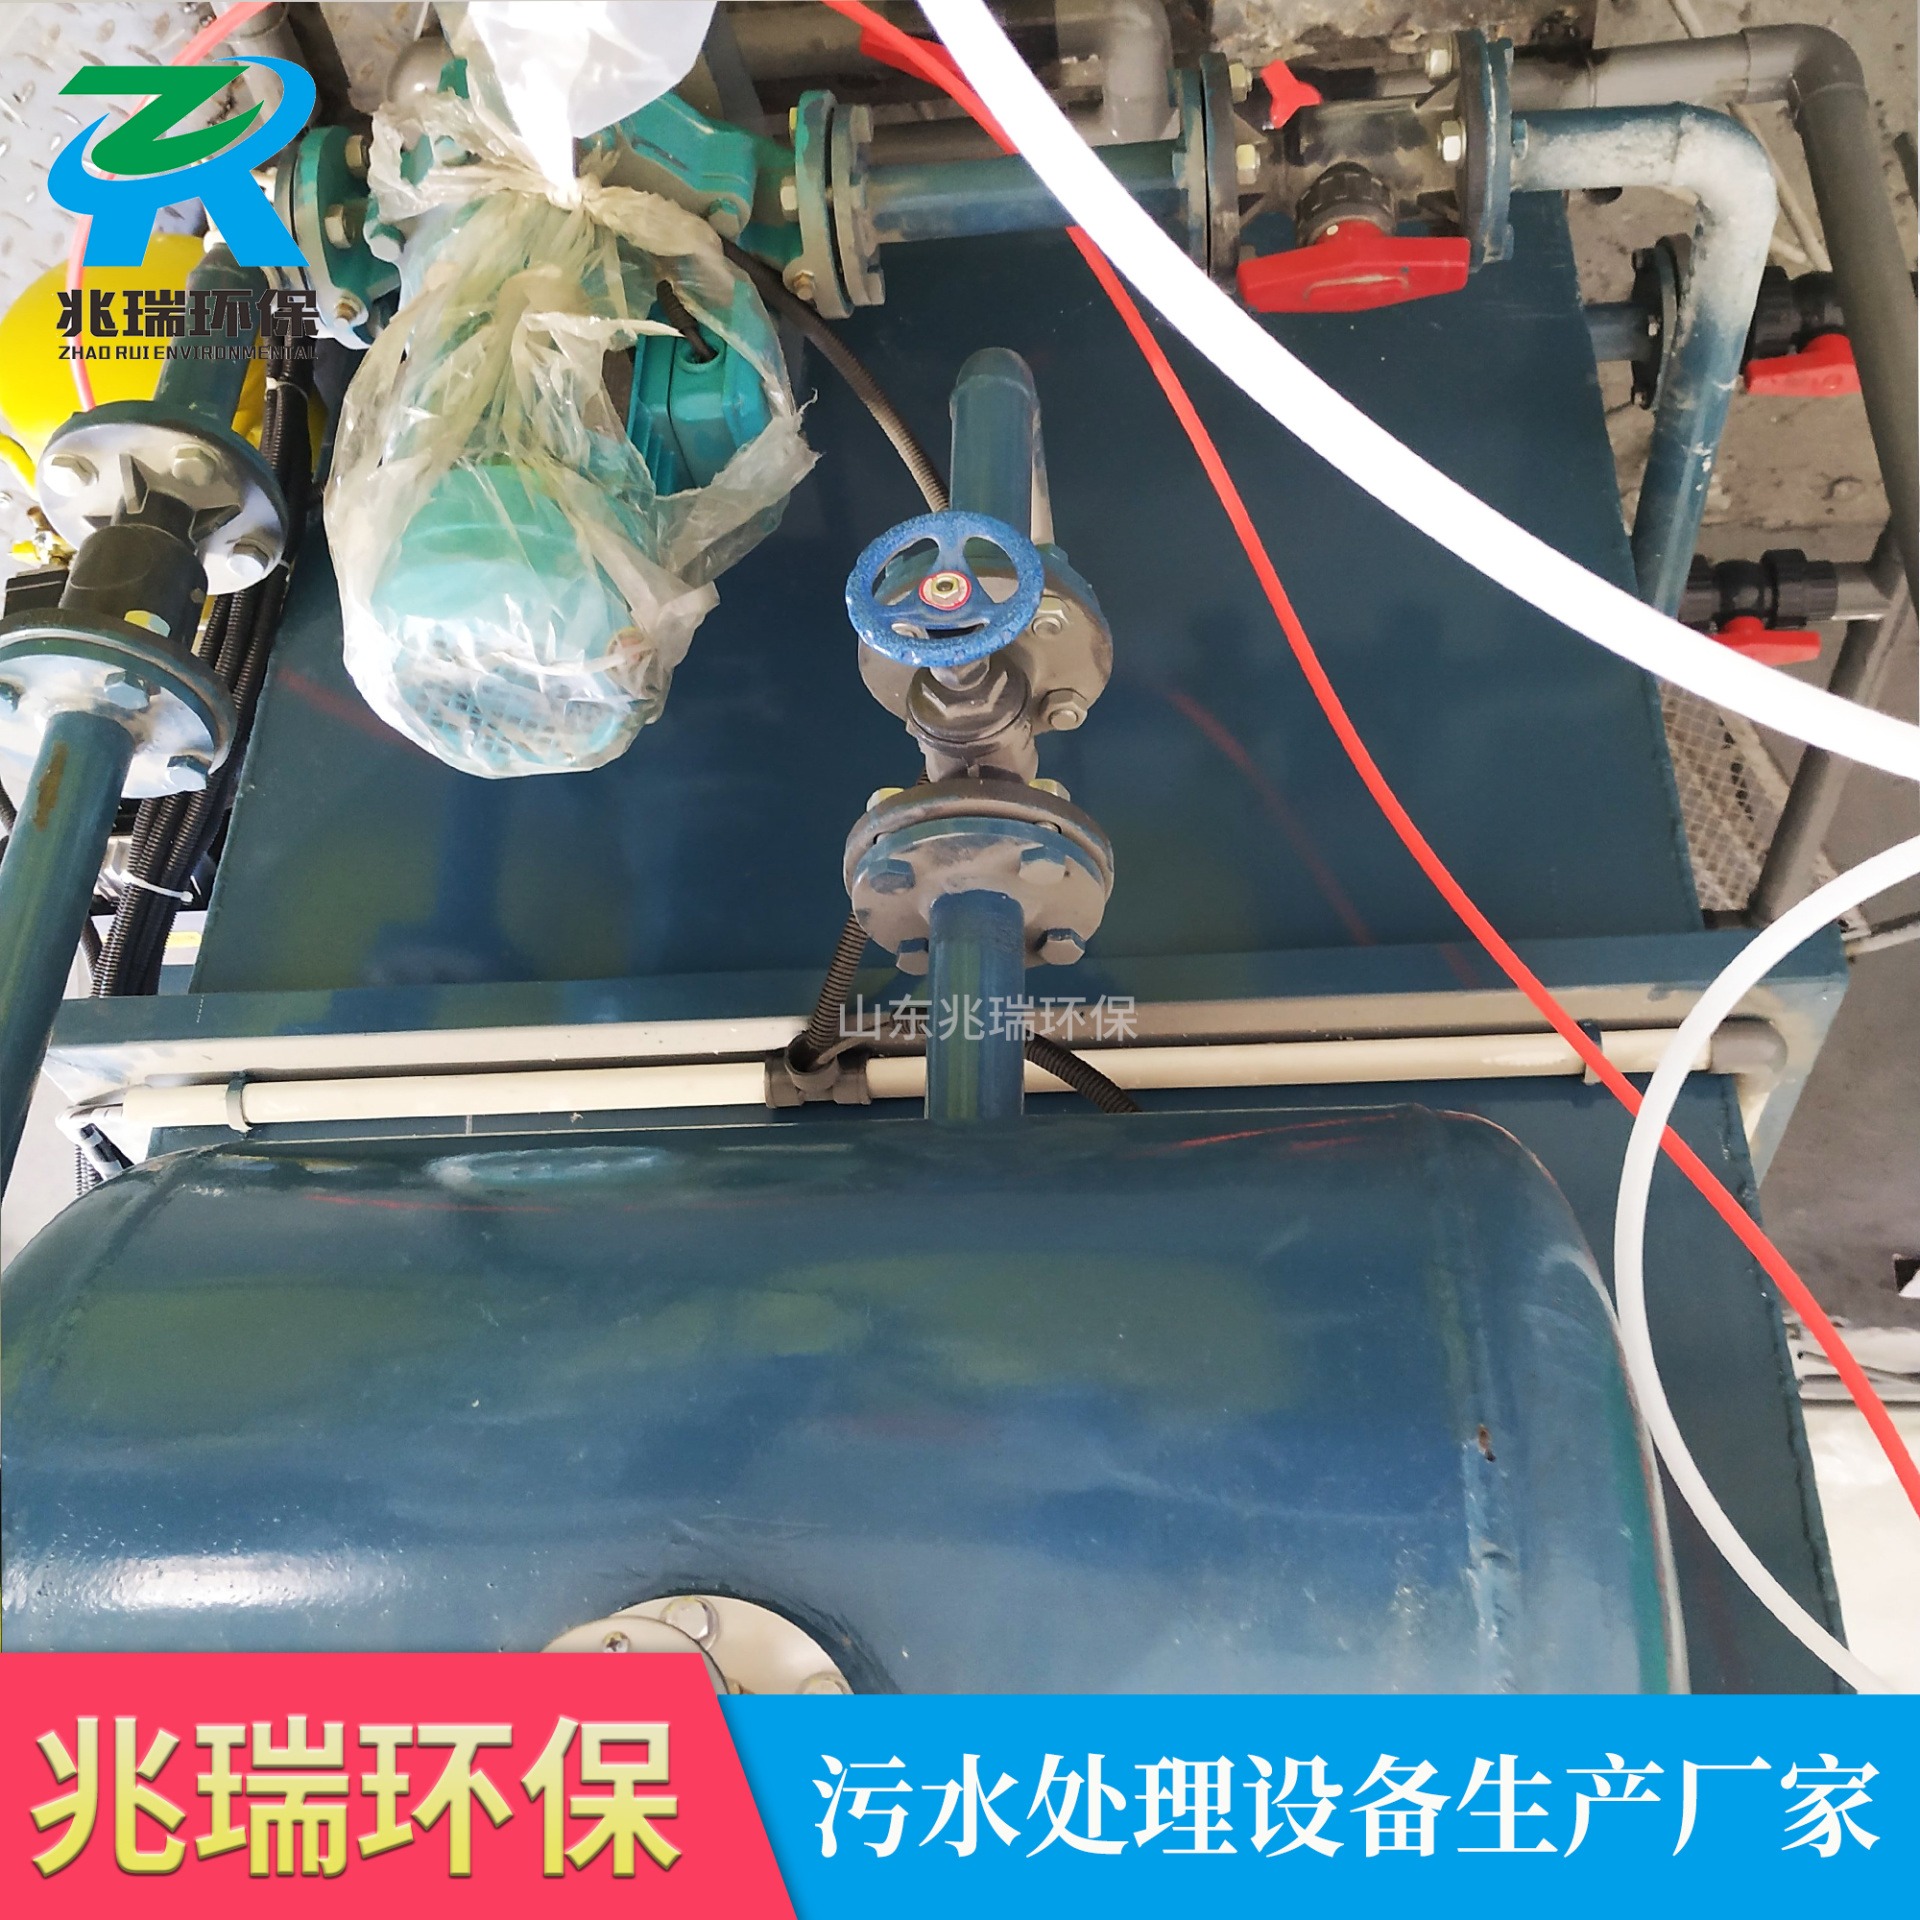 ZR溶气气浮机设备 兆瑞环保豆制品加工废水处理设备 污水处理成套设备 ZR-QF401